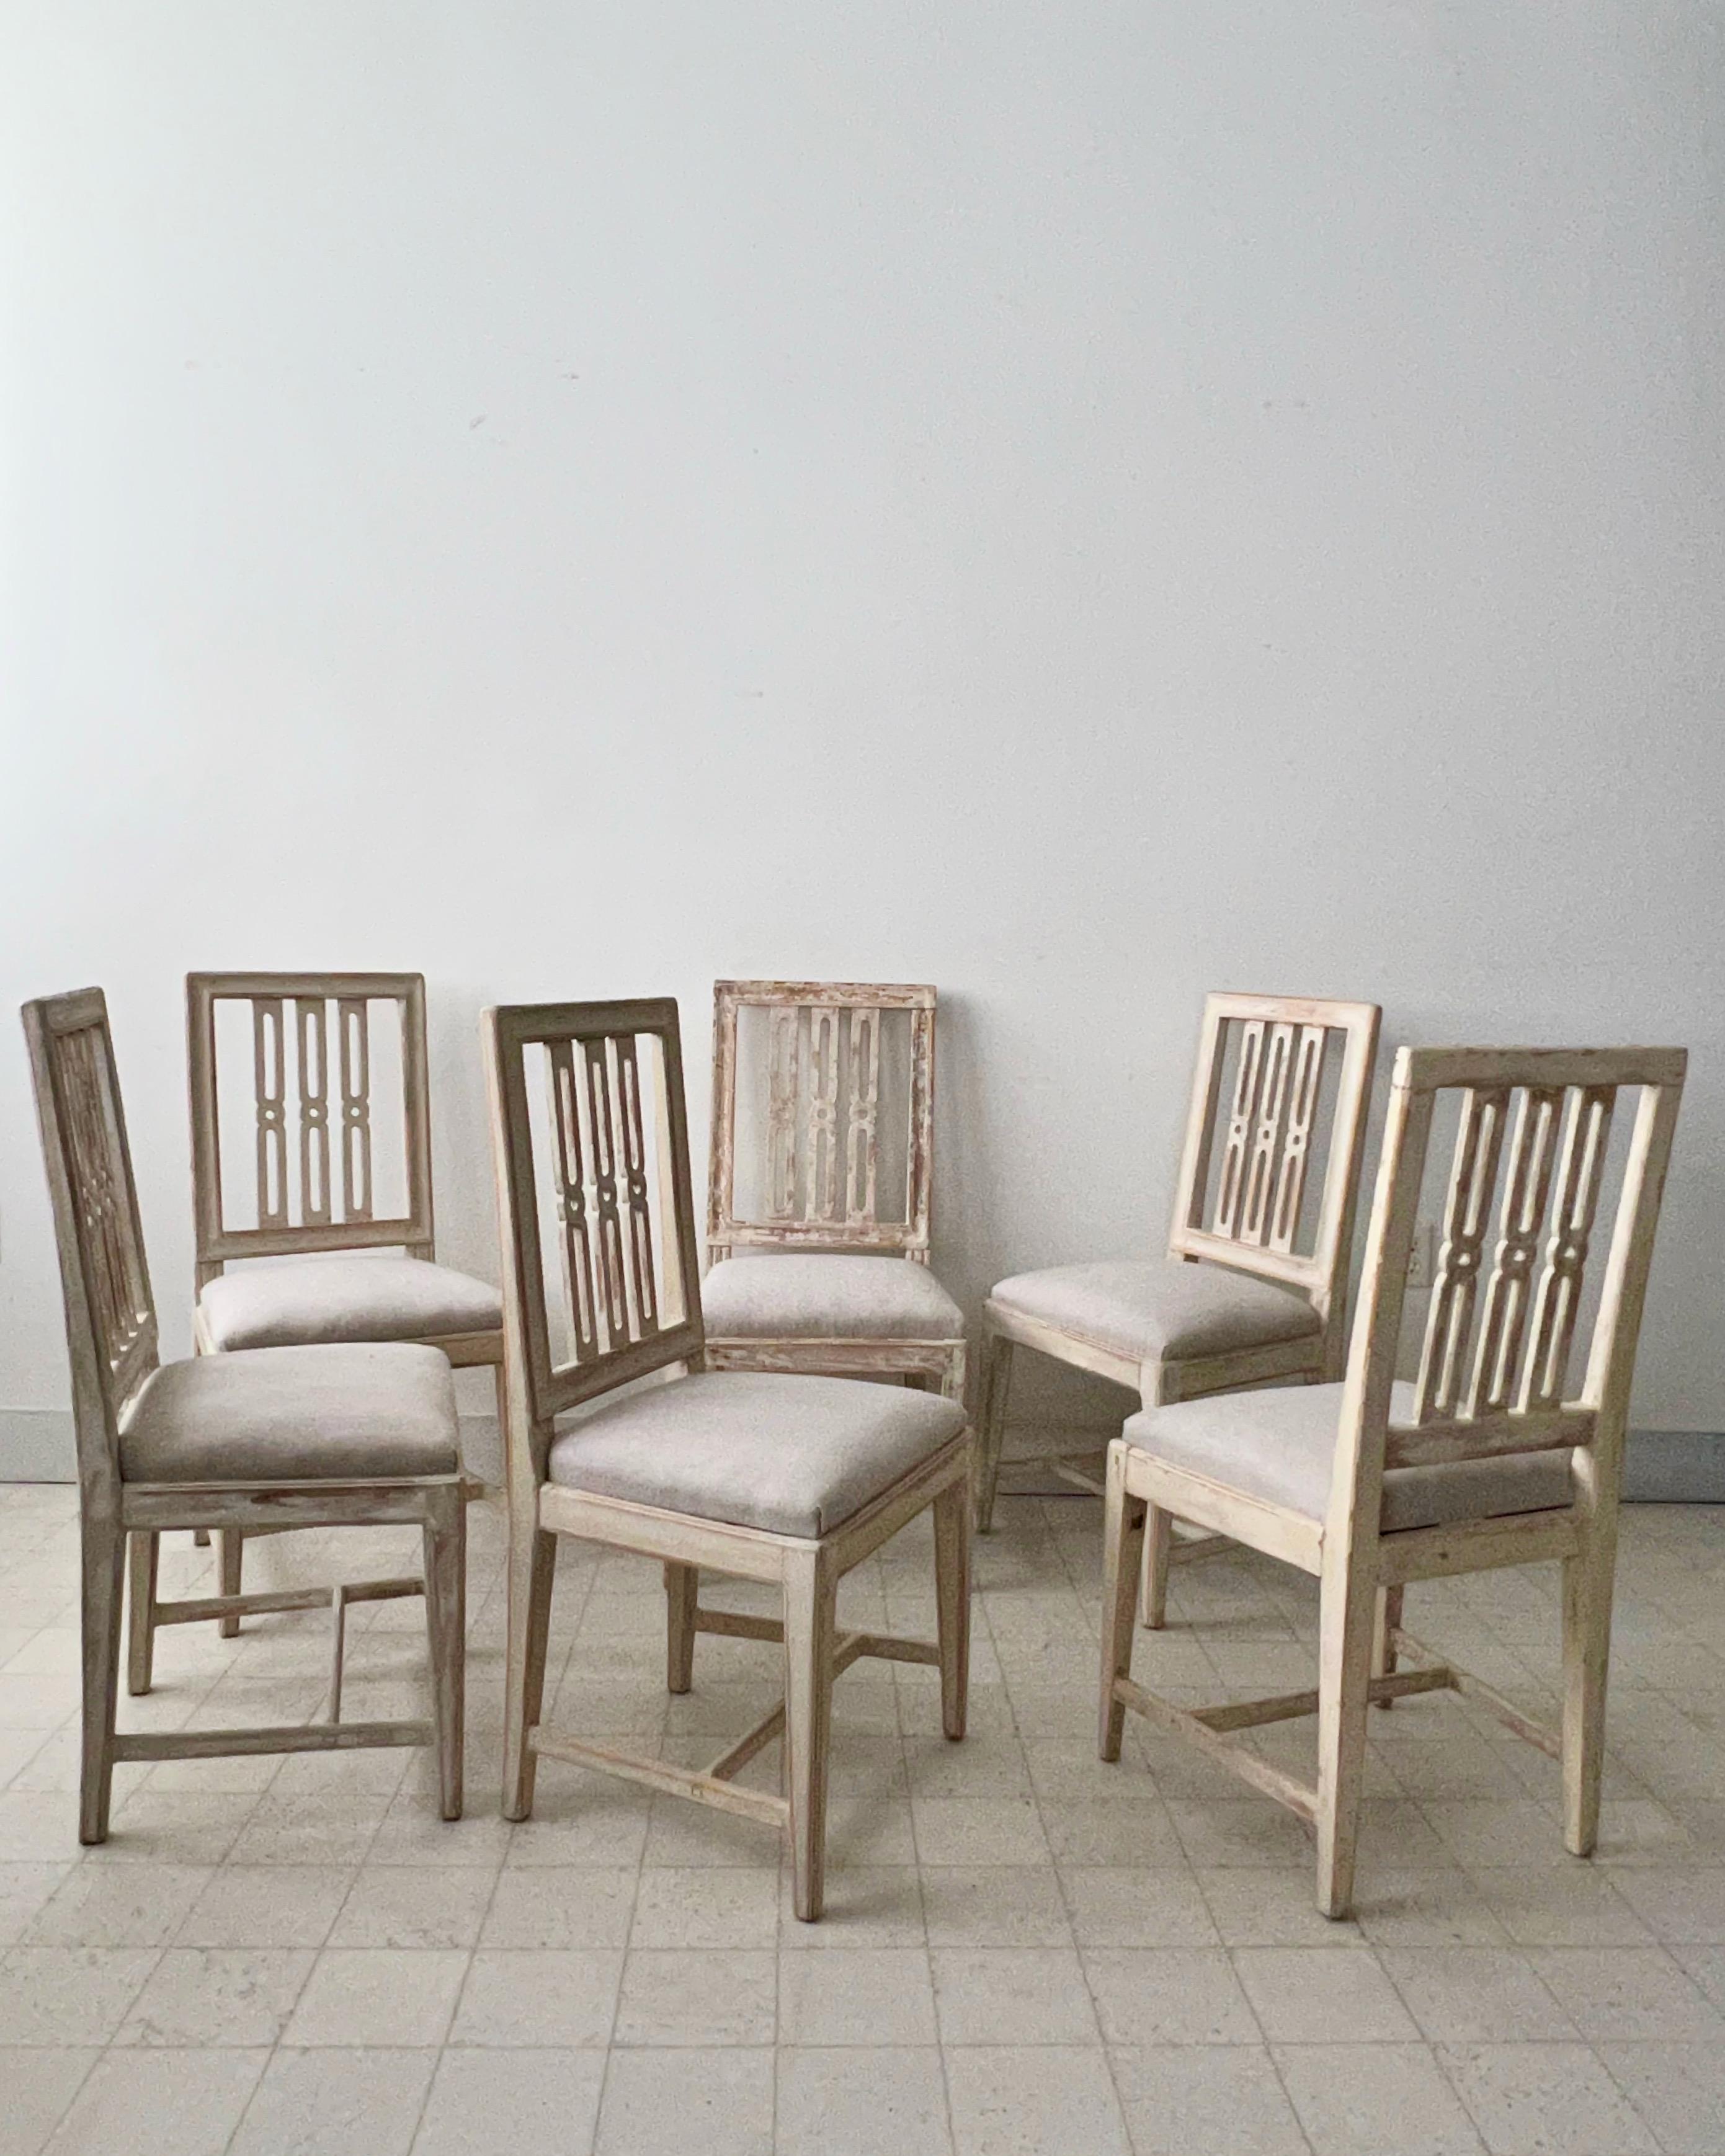 Ein Satz von sechs schwedischen Esszimmerstühlen aus bemaltem Holz aus dem späten 19. Jahrhundert, mit geschnitzten Leisten, spitz zulaufenden Beinen und mit Leinen gepolsterten Sitzkissen.
Anmerkung:
Zwei Stühle dieses Sets unterscheiden sich nur